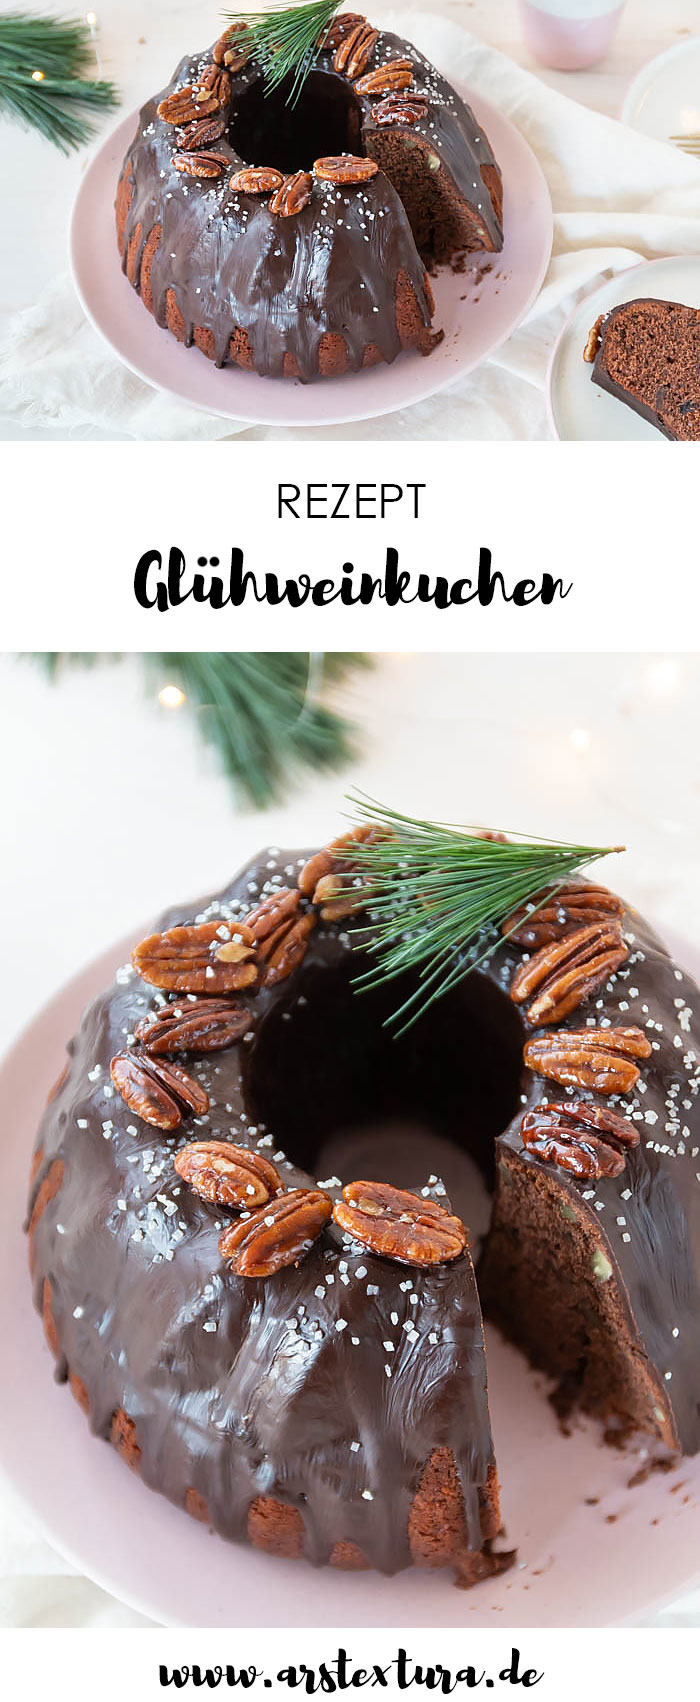 Glühweinkuchen mit Pekannüssen - ein tolles Weihnachtsrezept